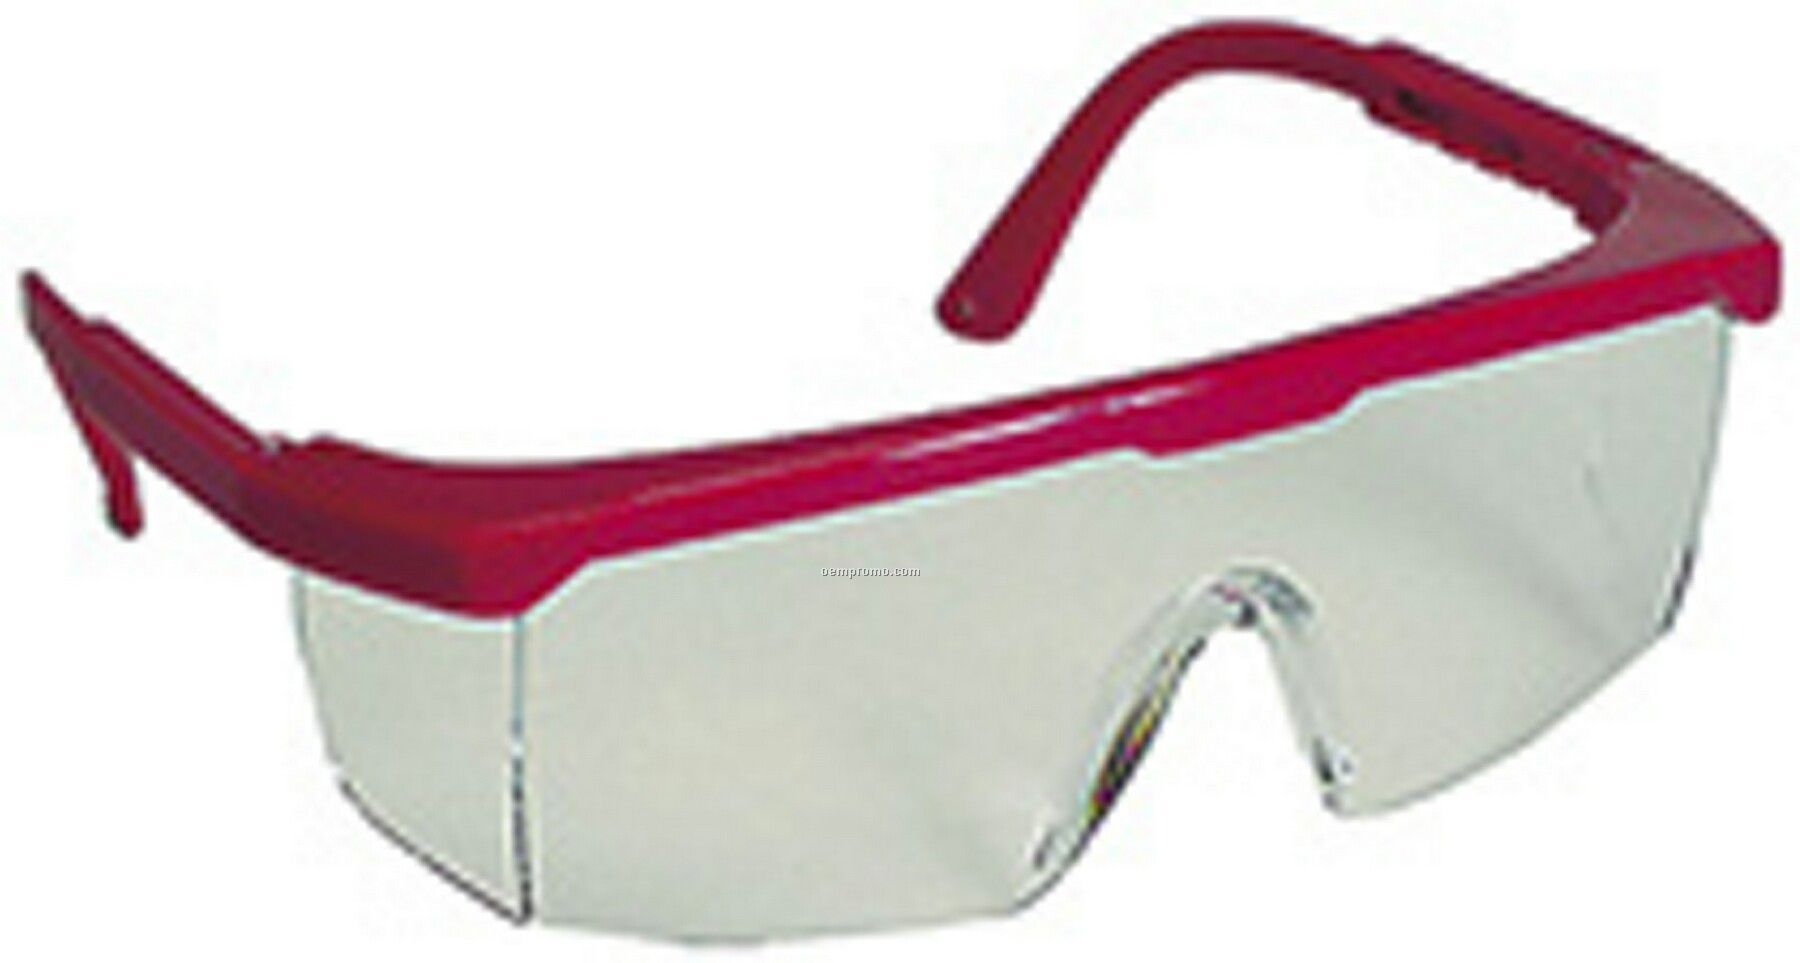 Strobe Safety Glasses